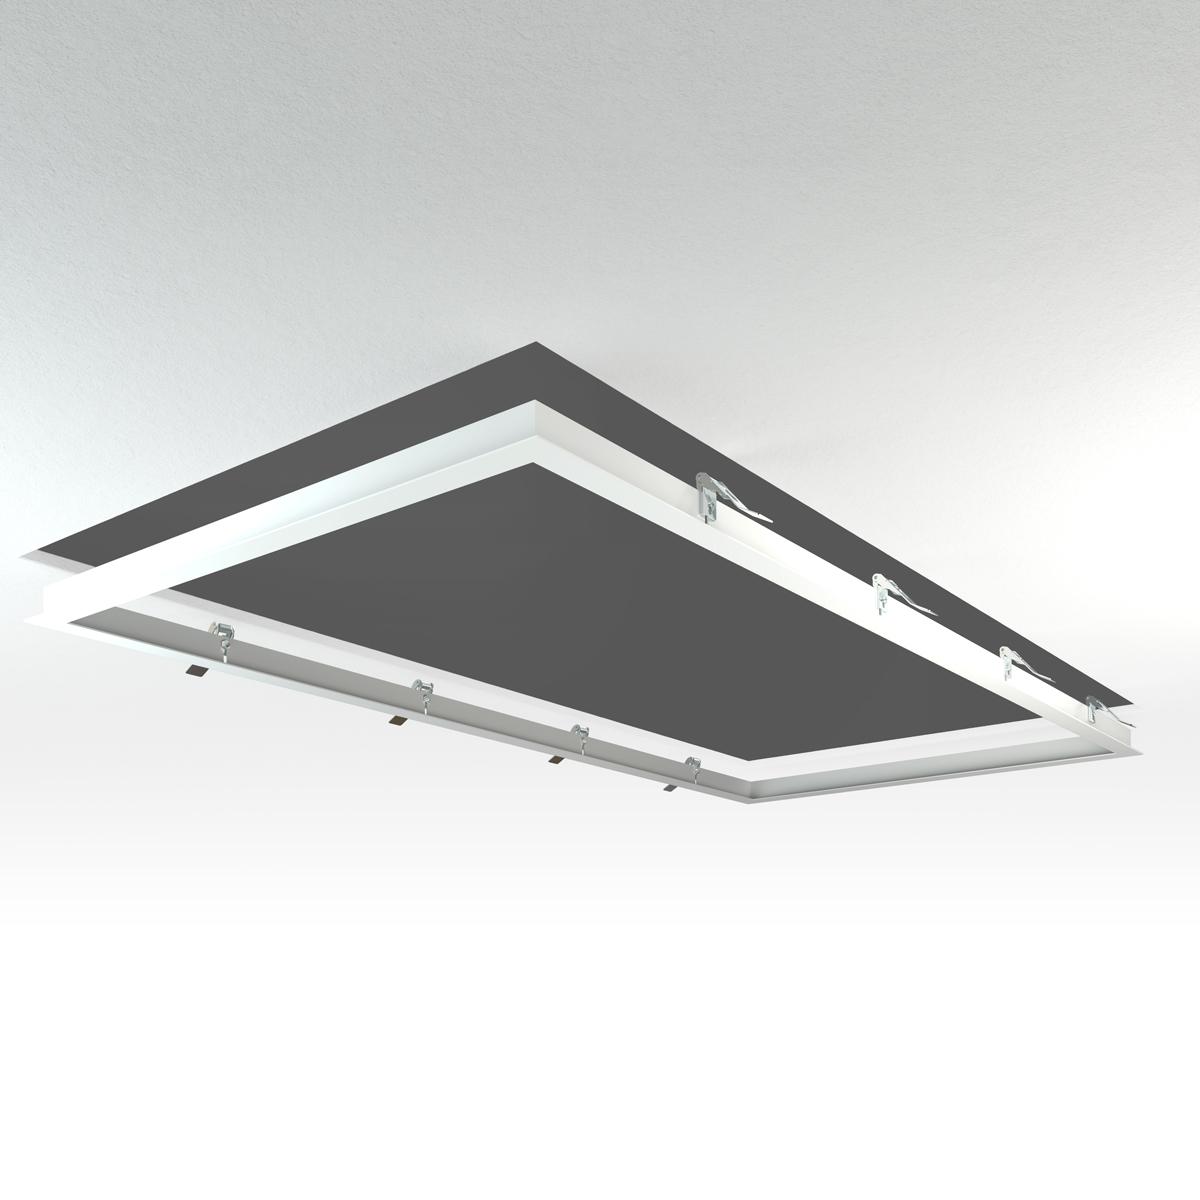 LED Panel Einbaurahmen 120x60cm weiß Deckeneinbau Montagerahmen für Rigipskartondecke